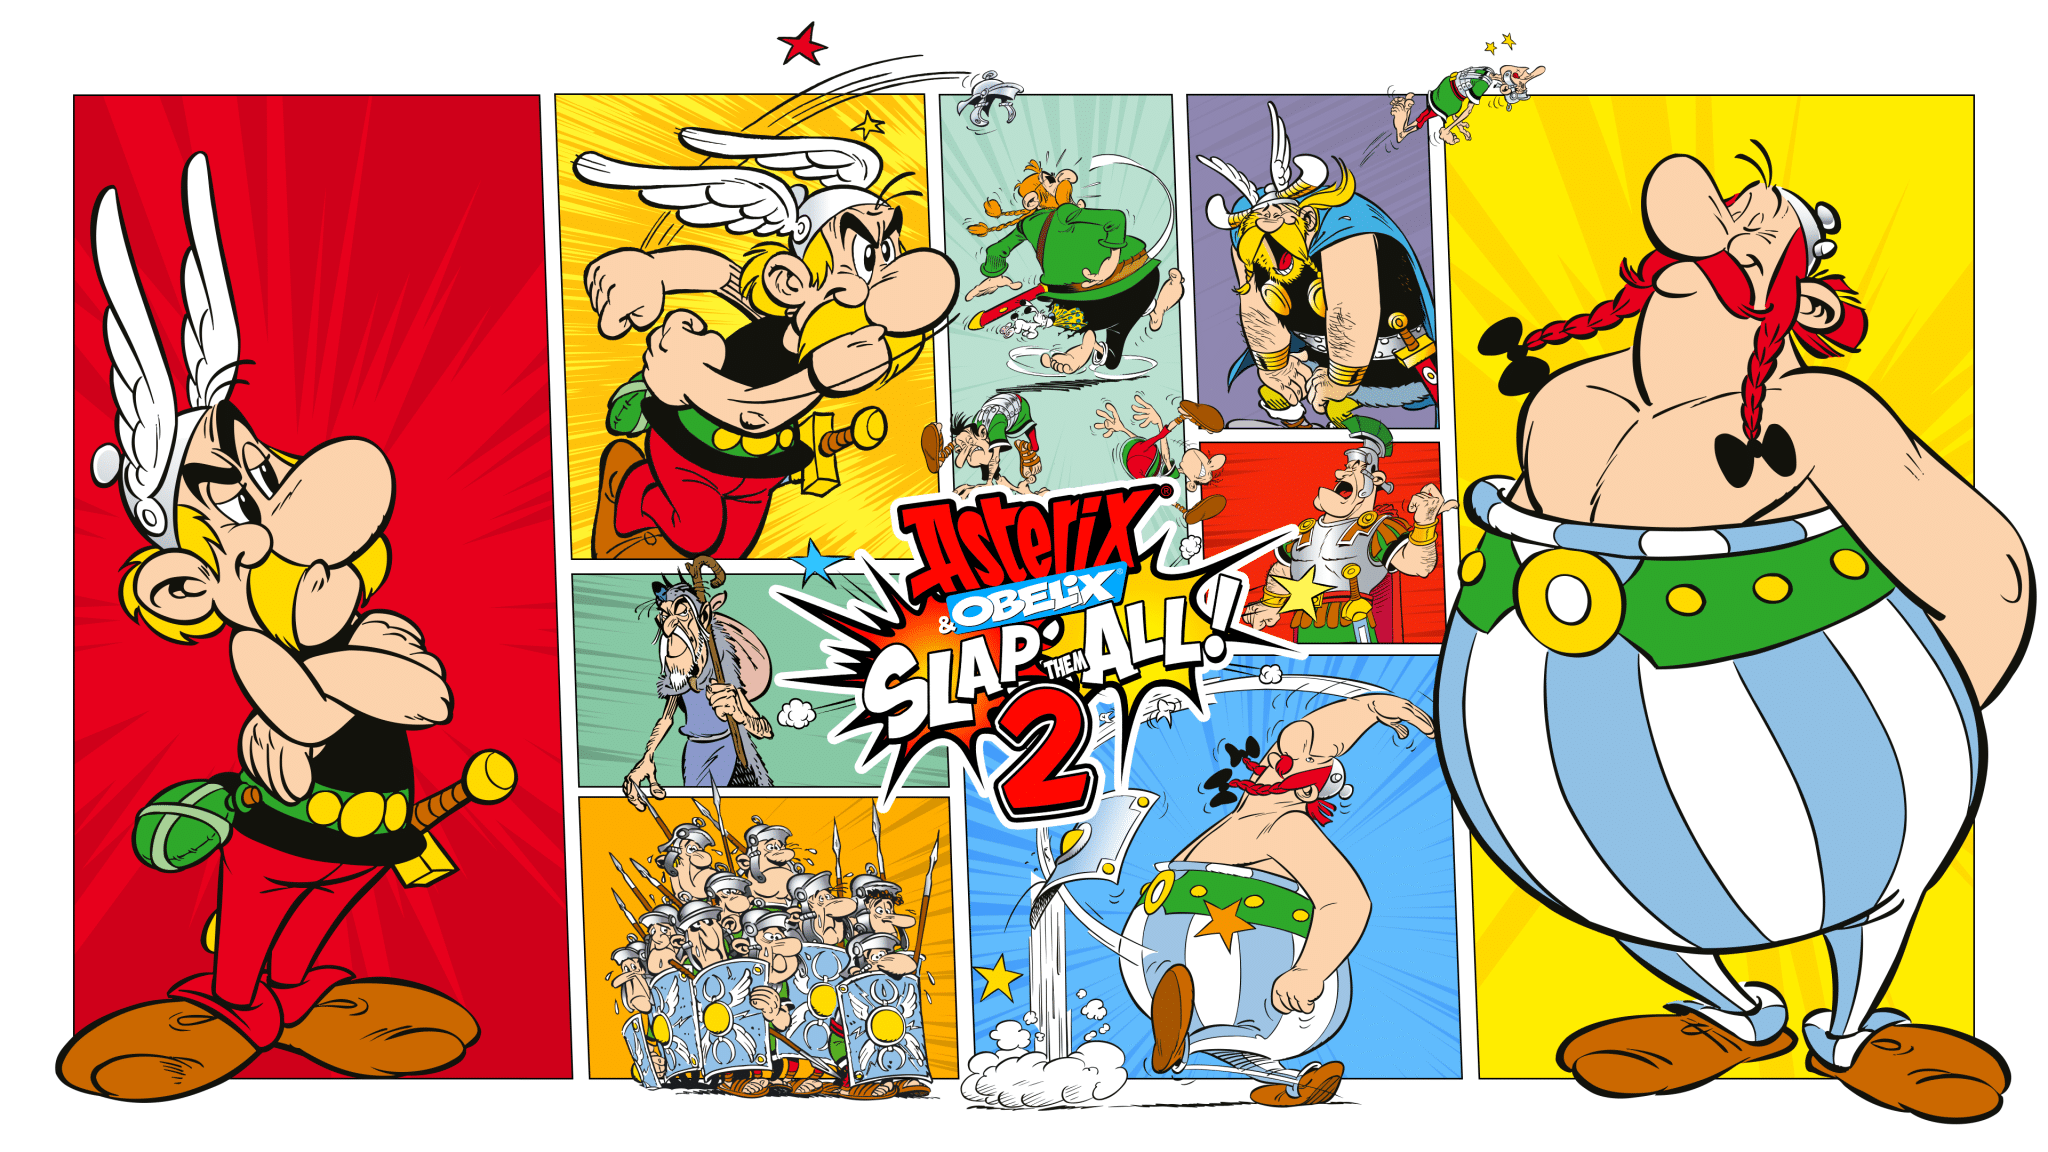 Asterix & Obelix: Slap Them All! 2 logo e locandina